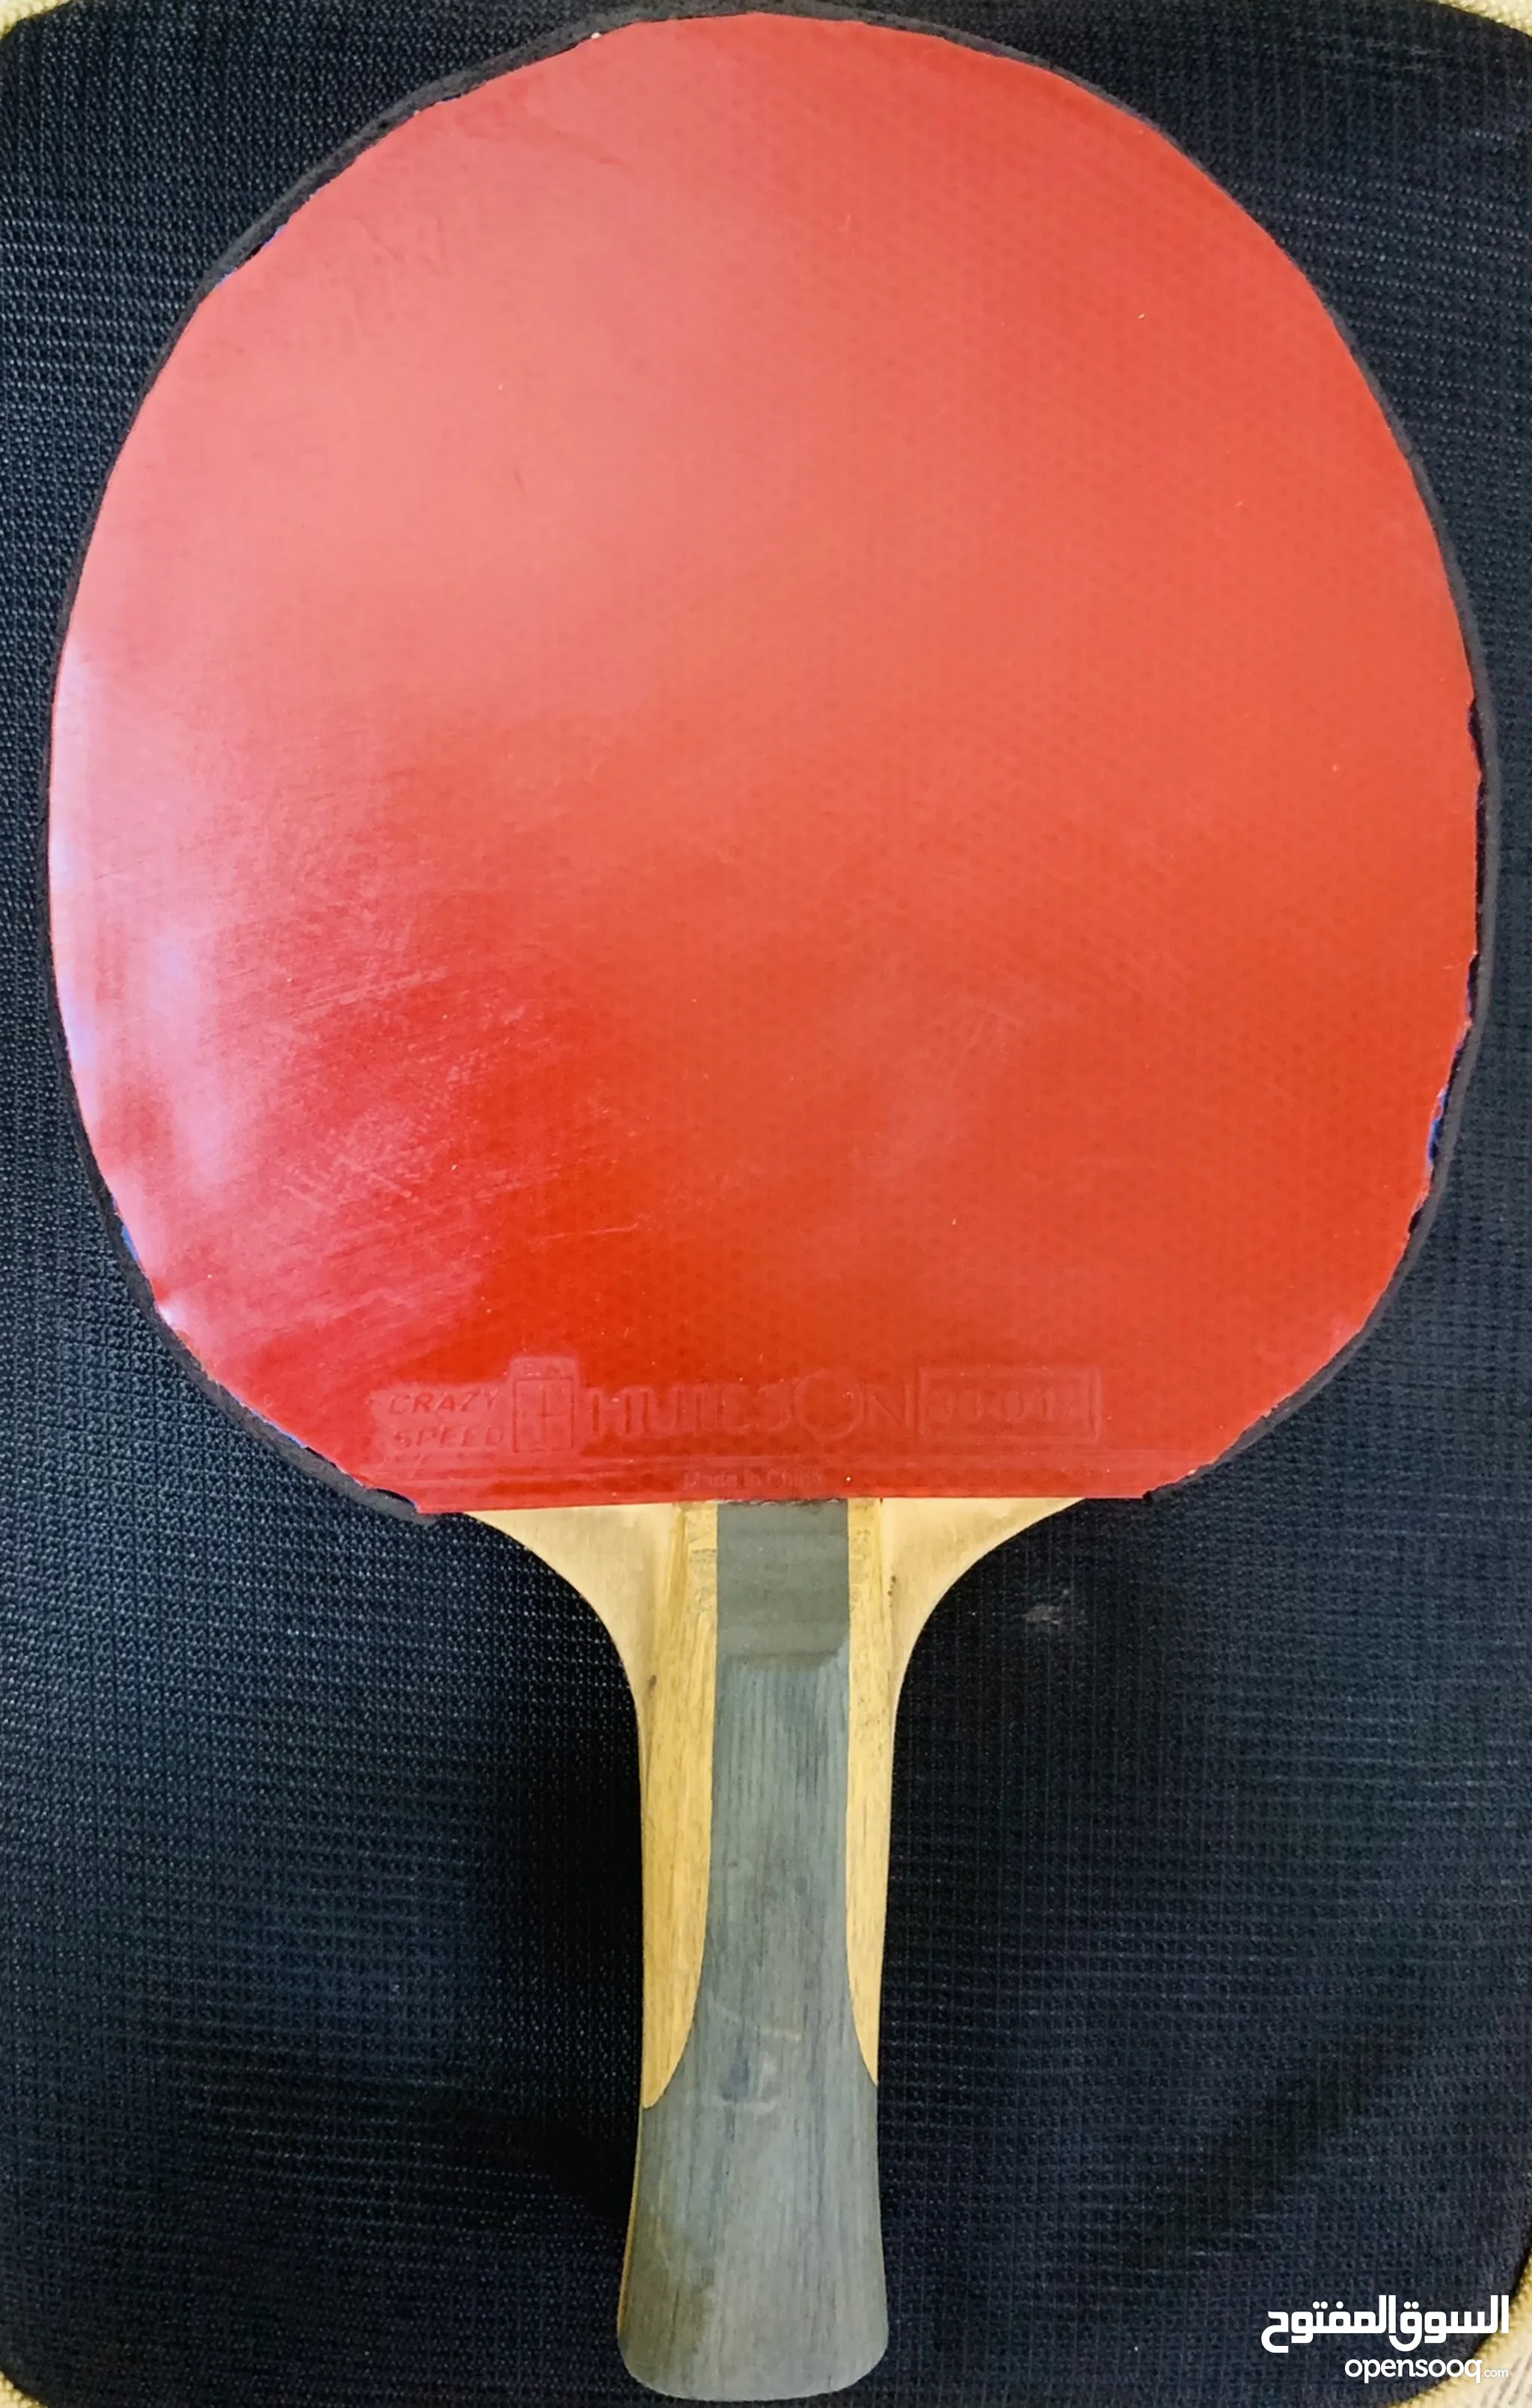 العاب مضرب للبيع في عُمان - كرة التنس : كرة الريشة, الطاولة : الاسكواش |  السوق المفتوح